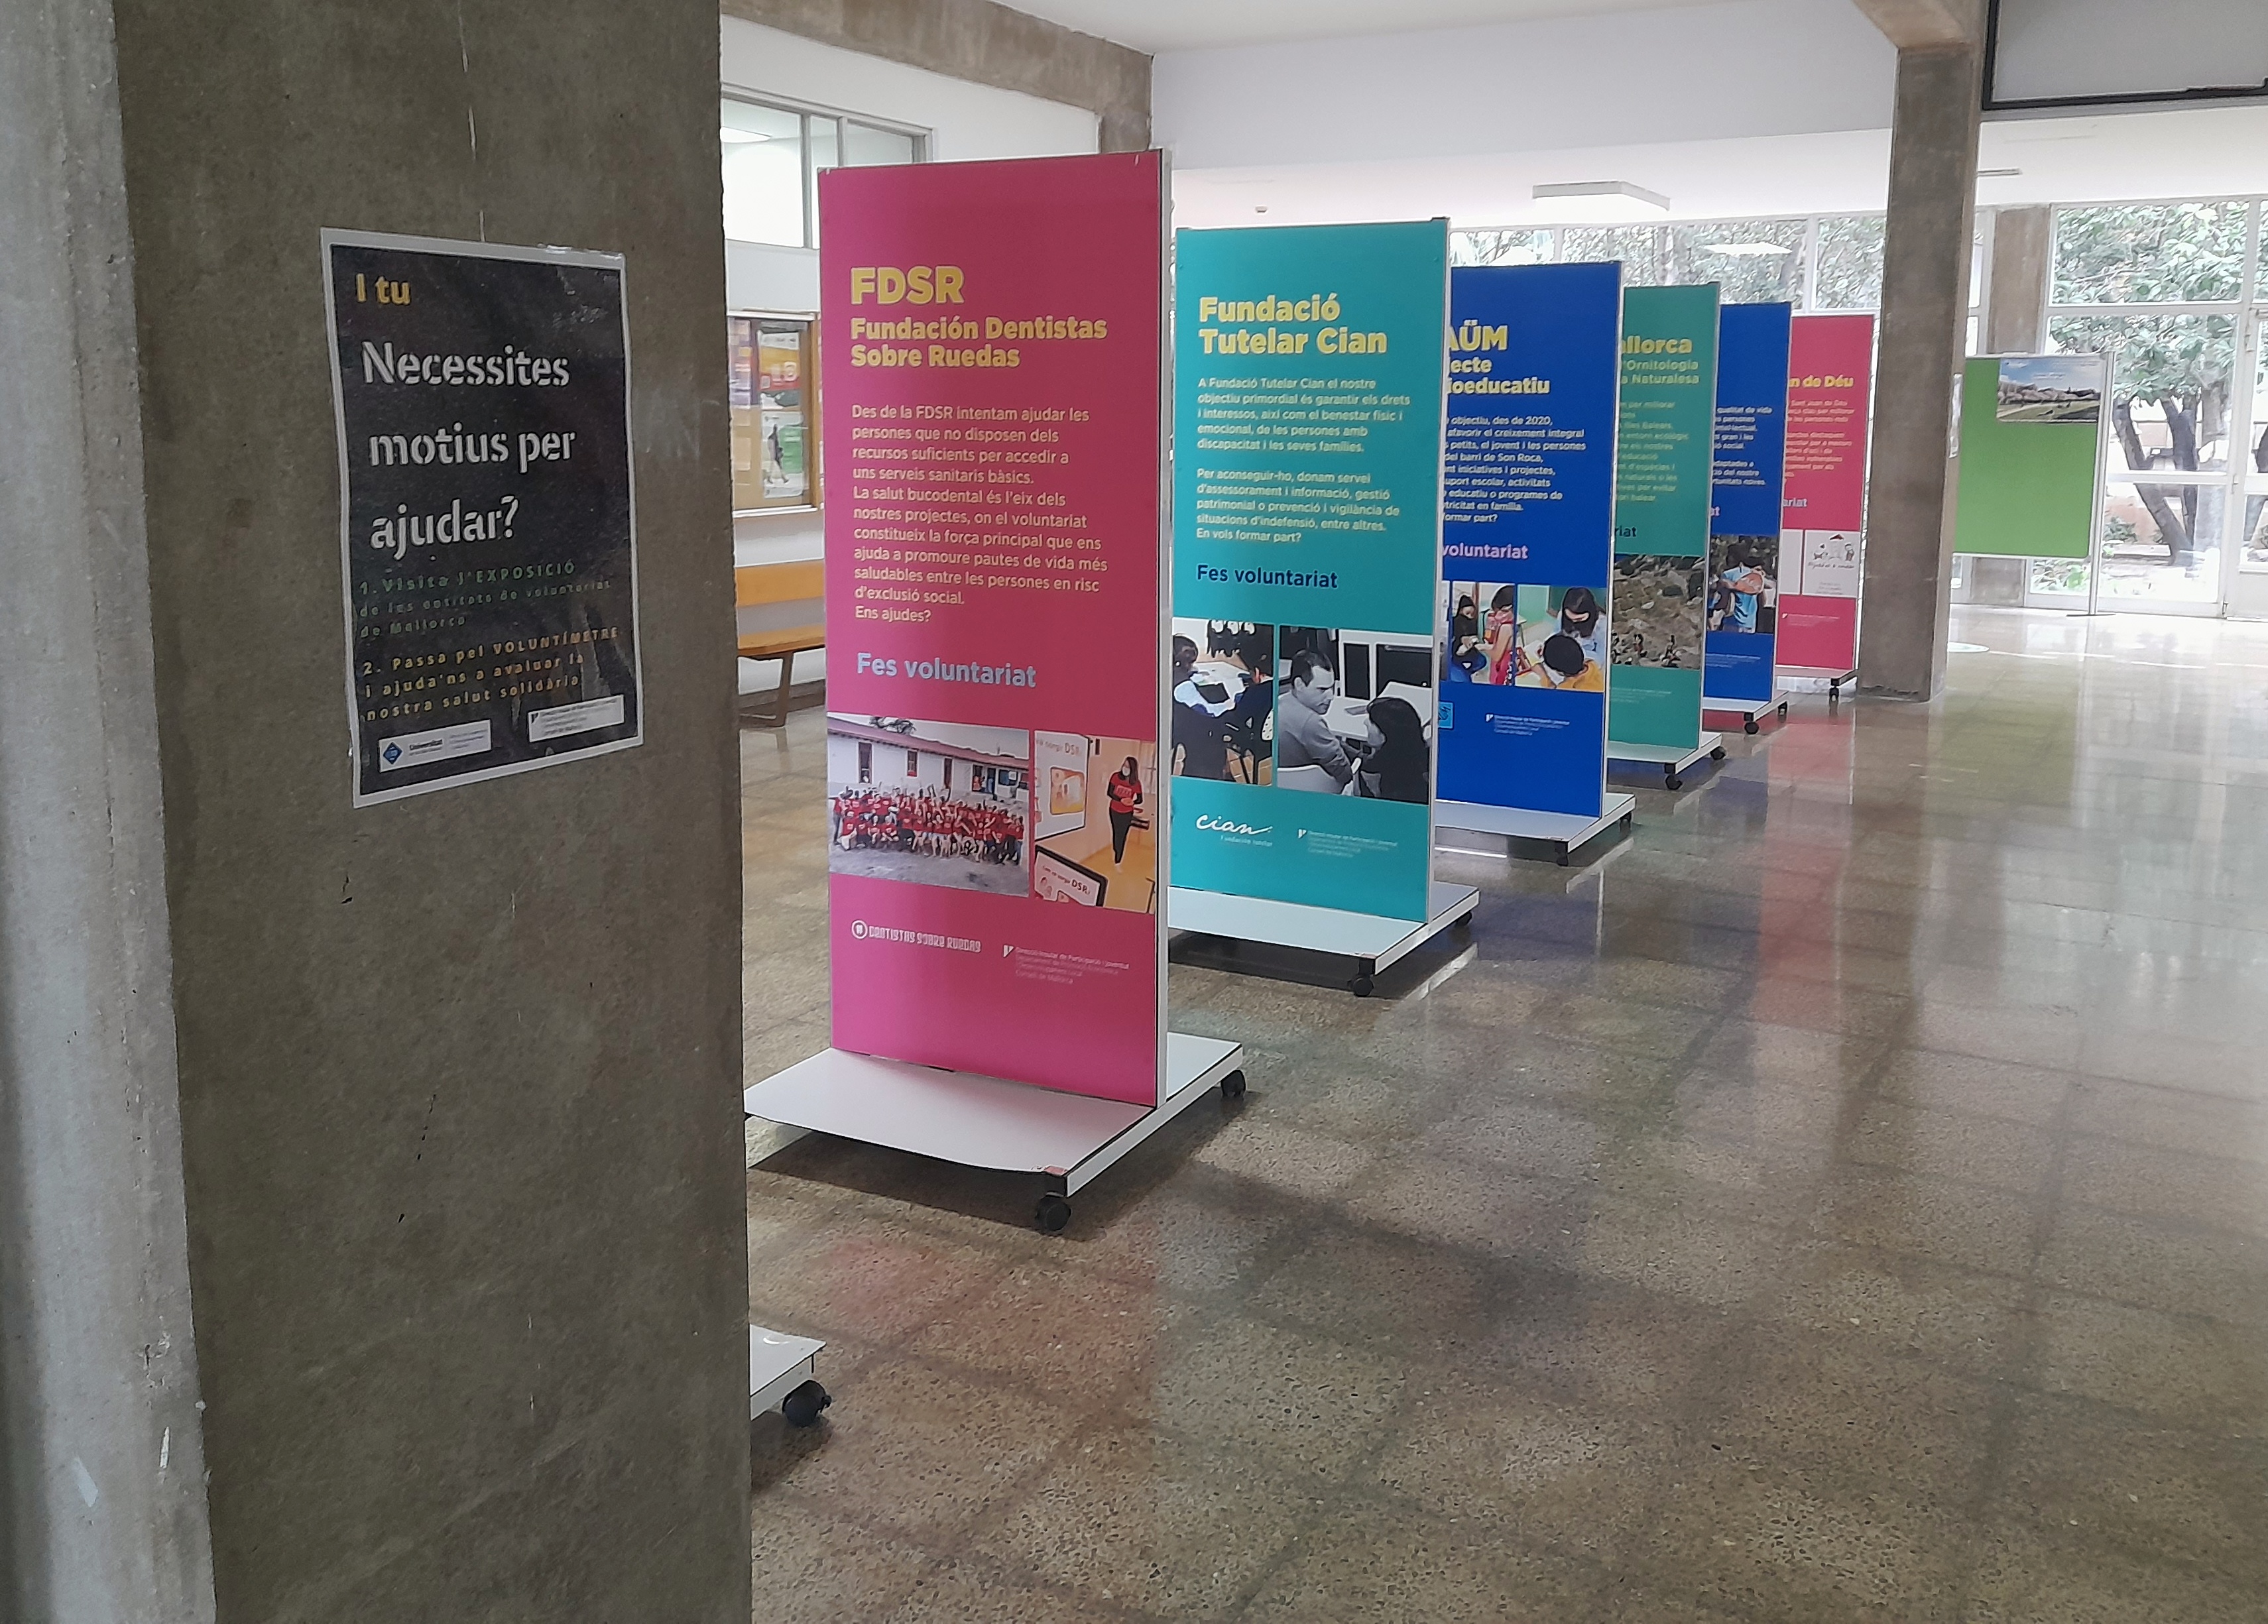 El edificio Ramon Llull de la Universitat de les Illes Balears (UIB) acoge este mes de febrero la exposición del Consell de Mallorca «¿Se necesitan motivos para ayudar?».